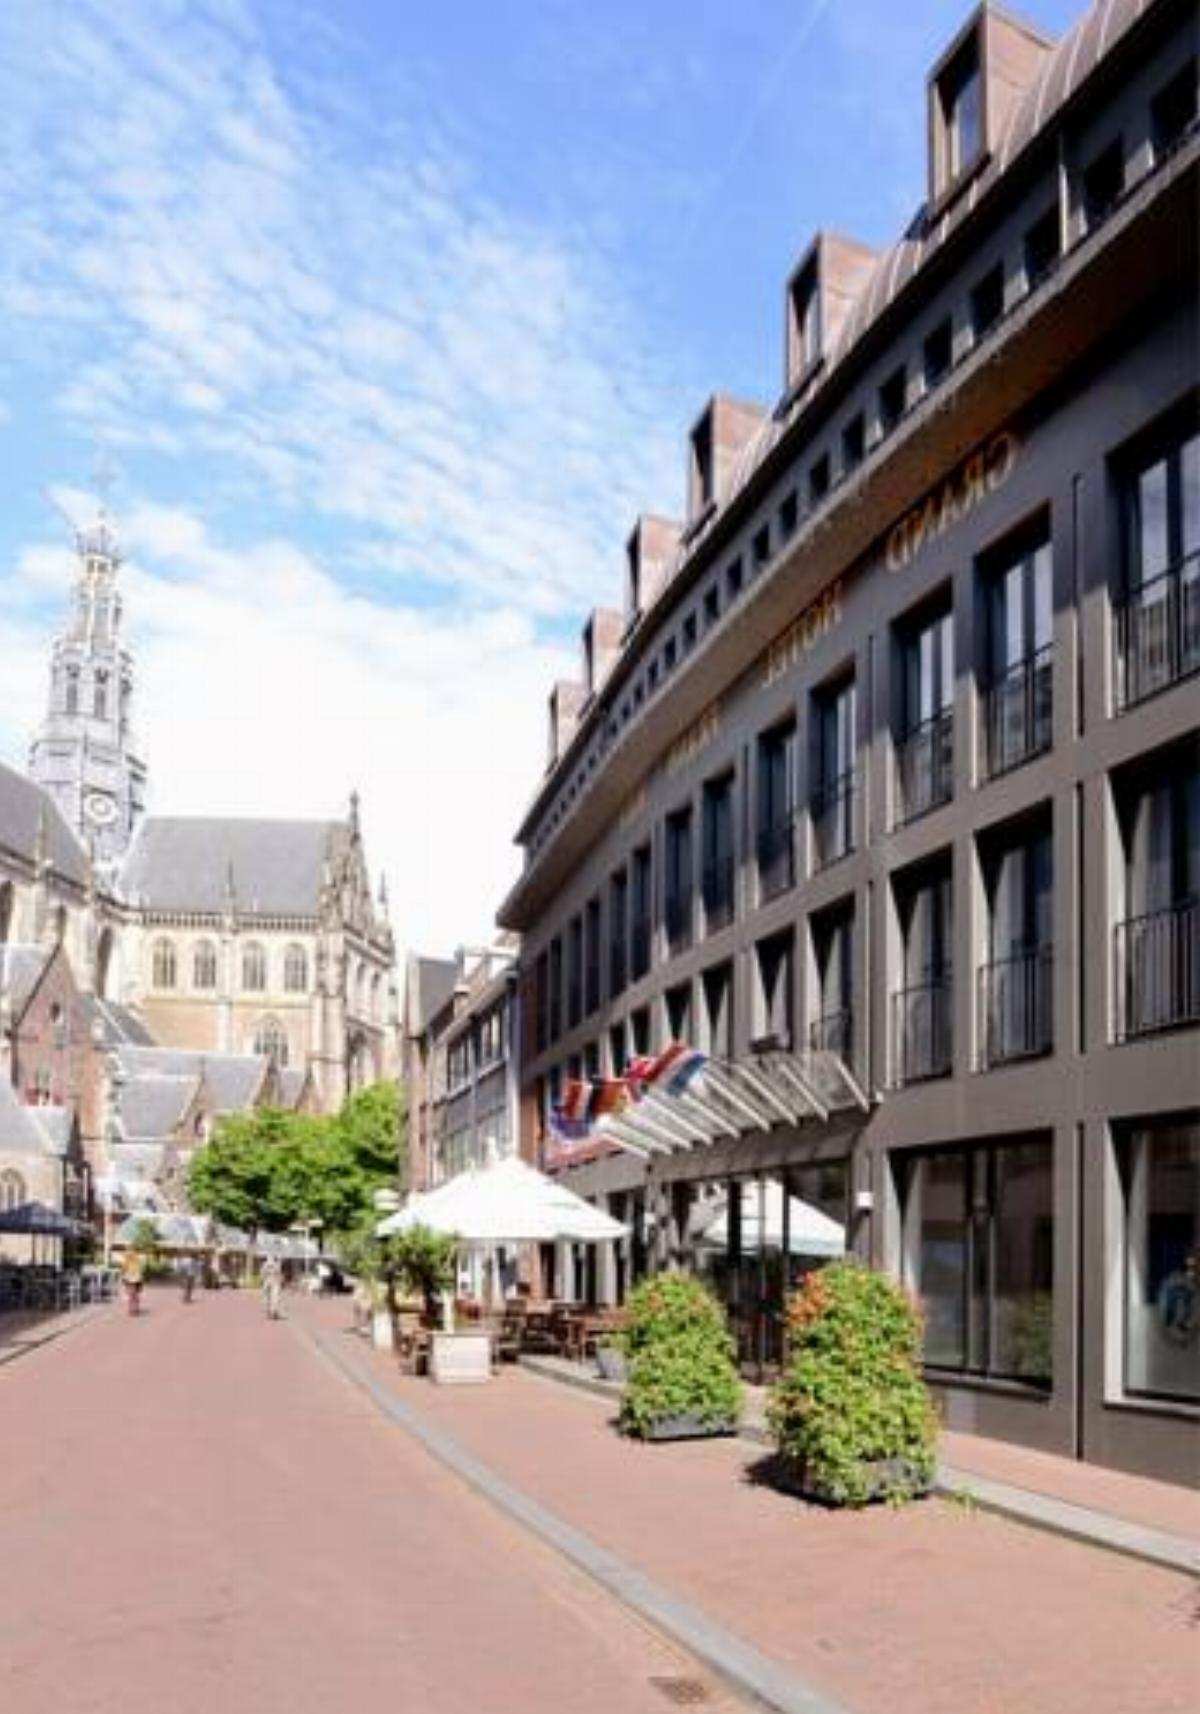 Amrâth Grand Hotel Frans Hals Hotel Haarlem Netherlands